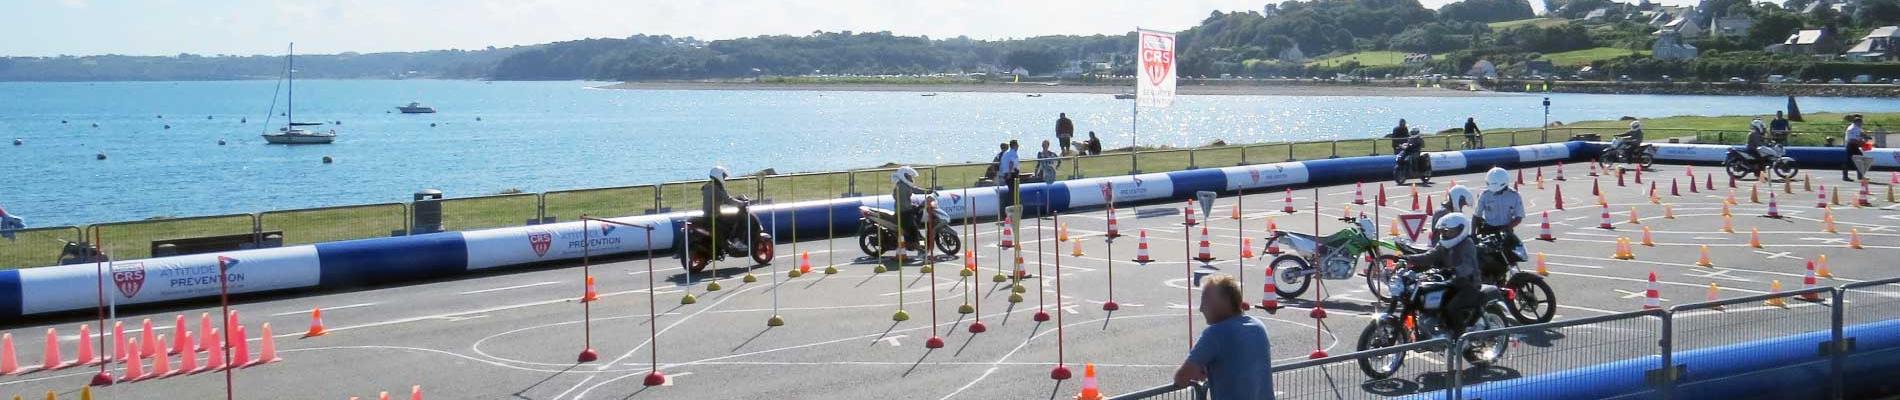 Initiation au deux-roues : les jeunes en piste pour la sécurité à La Tranche-sur-Mer (85), du 30 juillet au 3 août